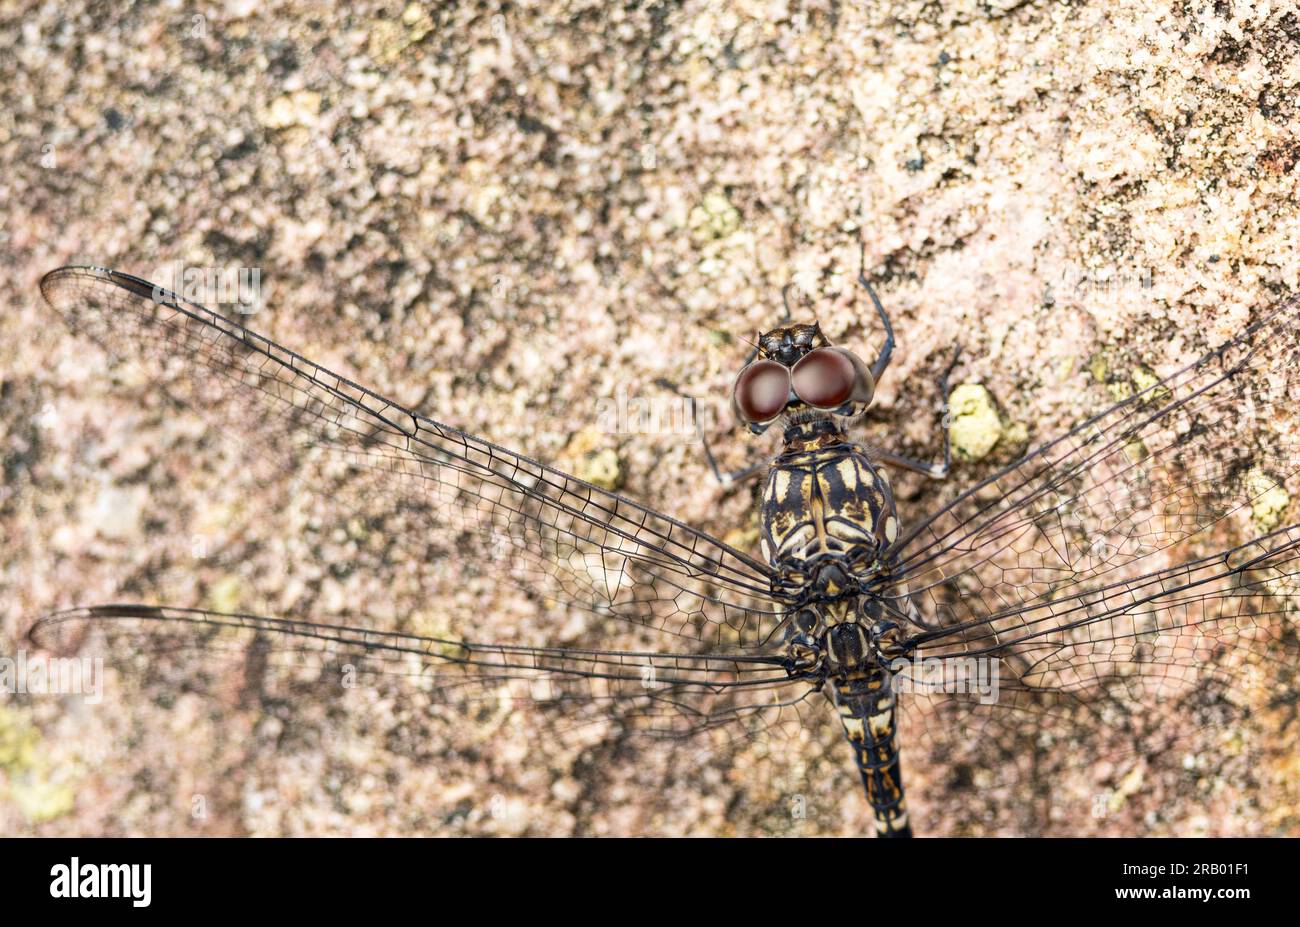 I grandi occhi di una libellula danno a questo predatore acrobatico una visione a 360 gradi. Uno dei primi insetti volanti è stato dominante da allora. Foto Stock